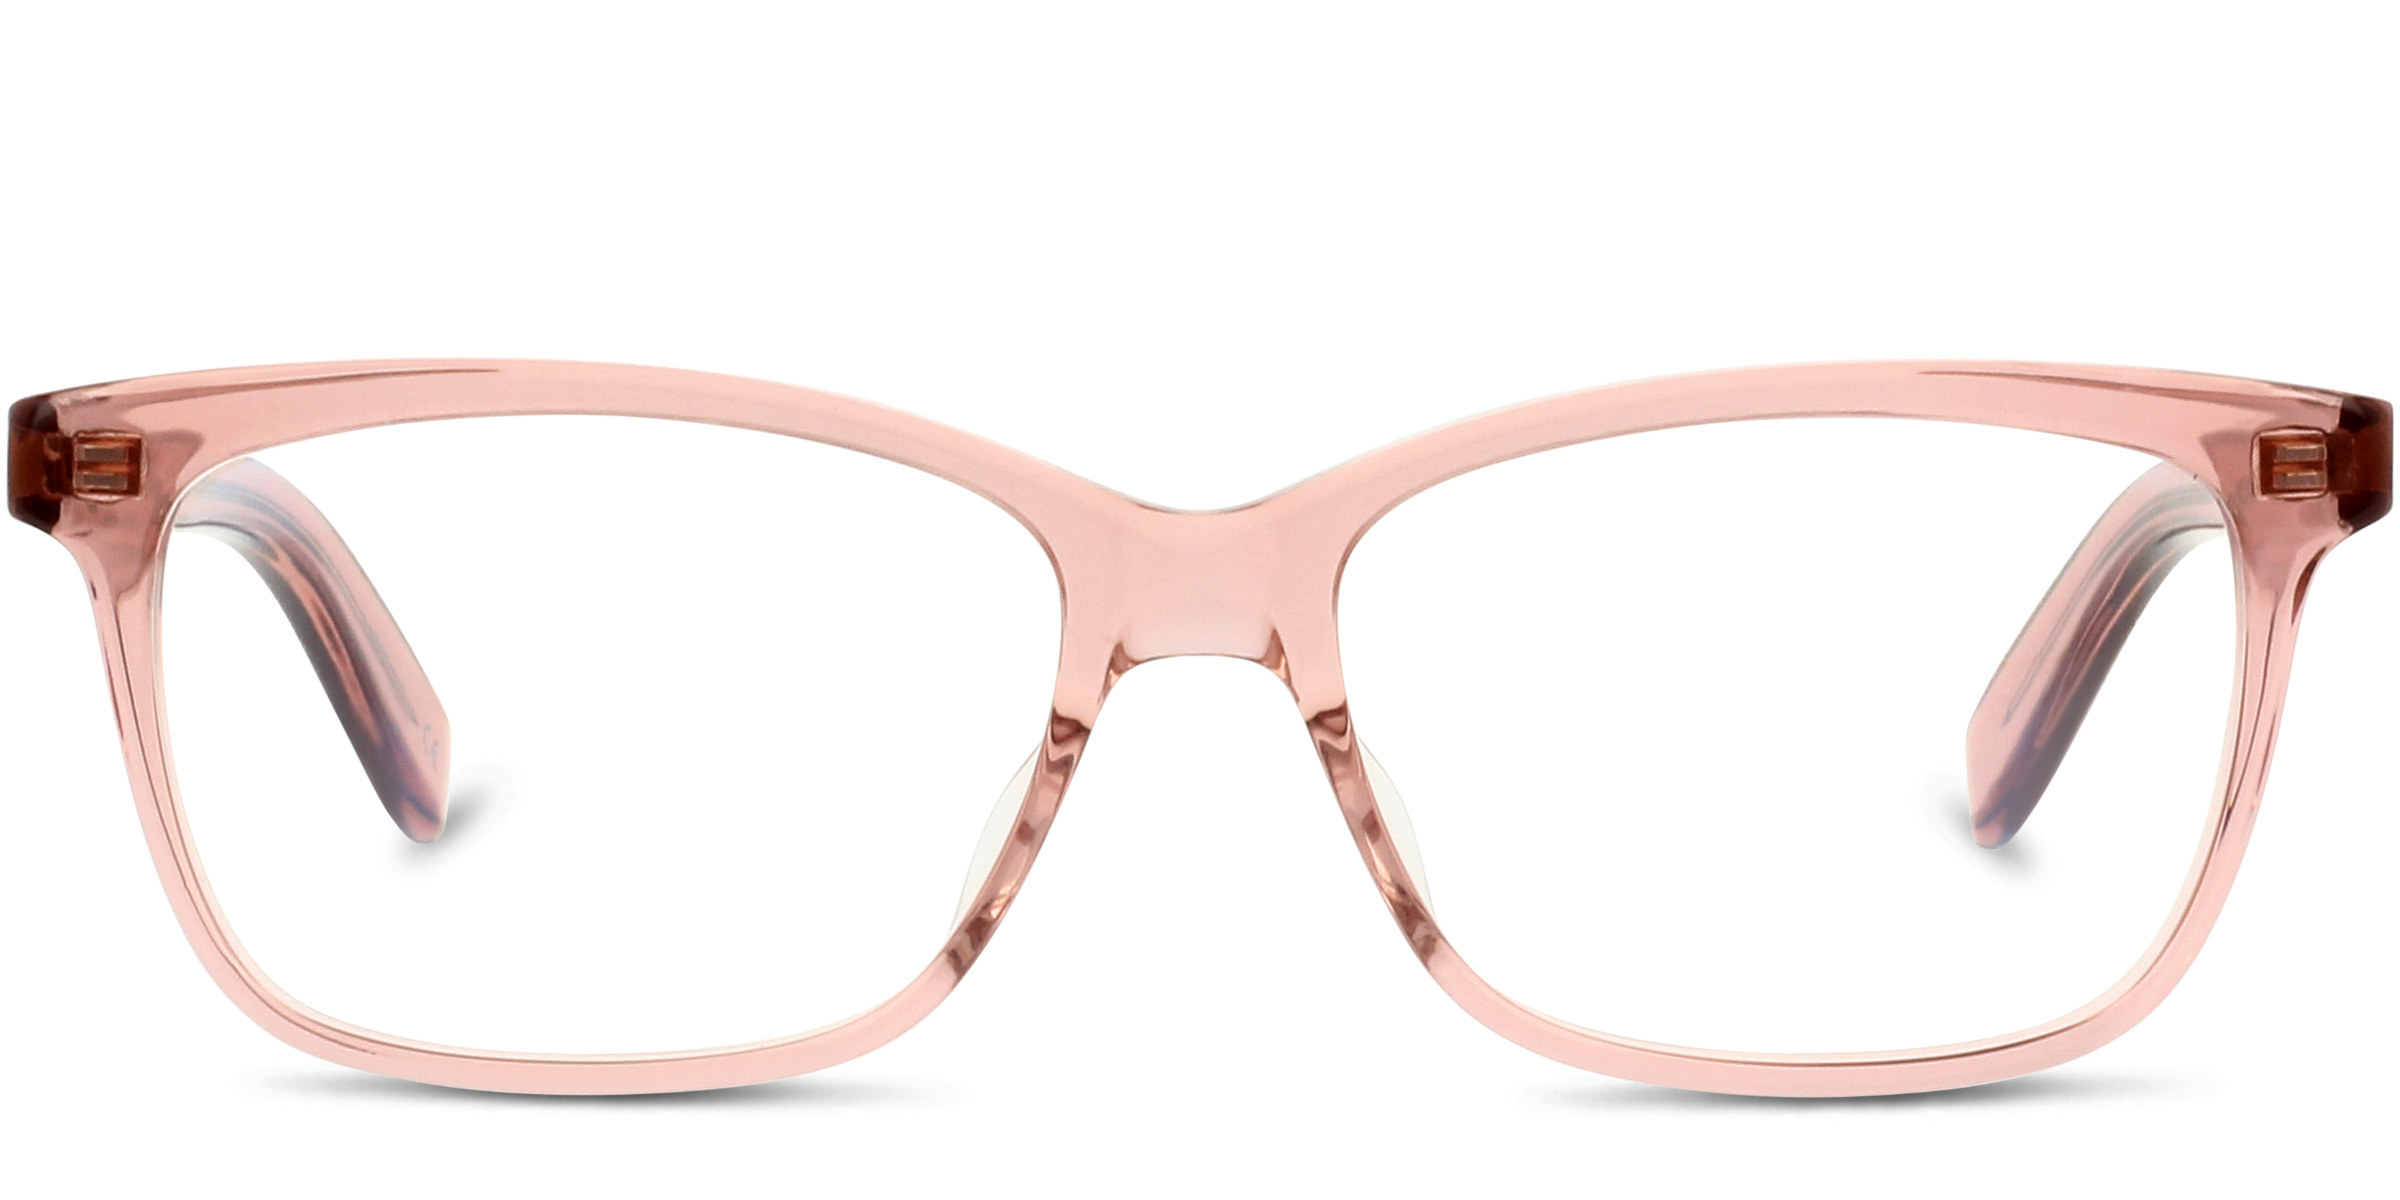 Saint Laurent Eyeglasses SL 7 Modern Glasses Online at 